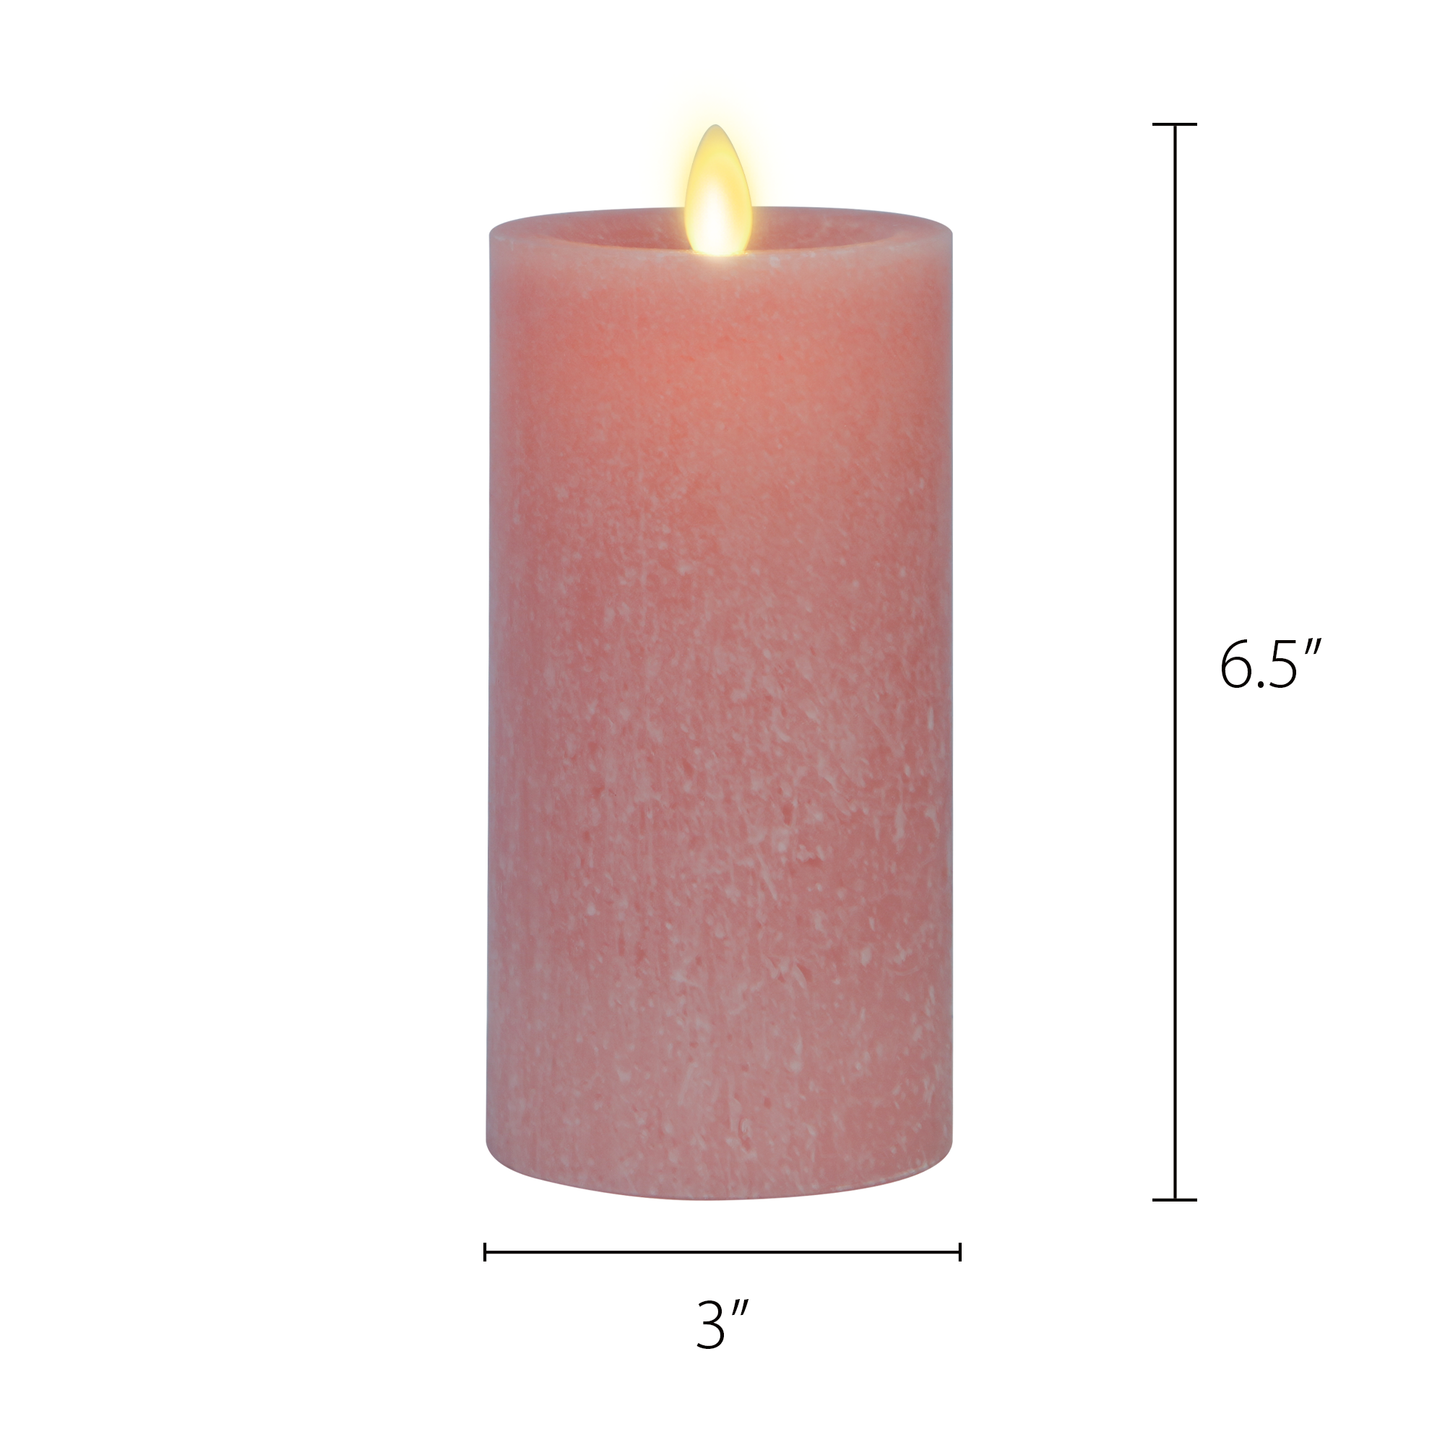 Luminara's flameless rose tan seaglass candles